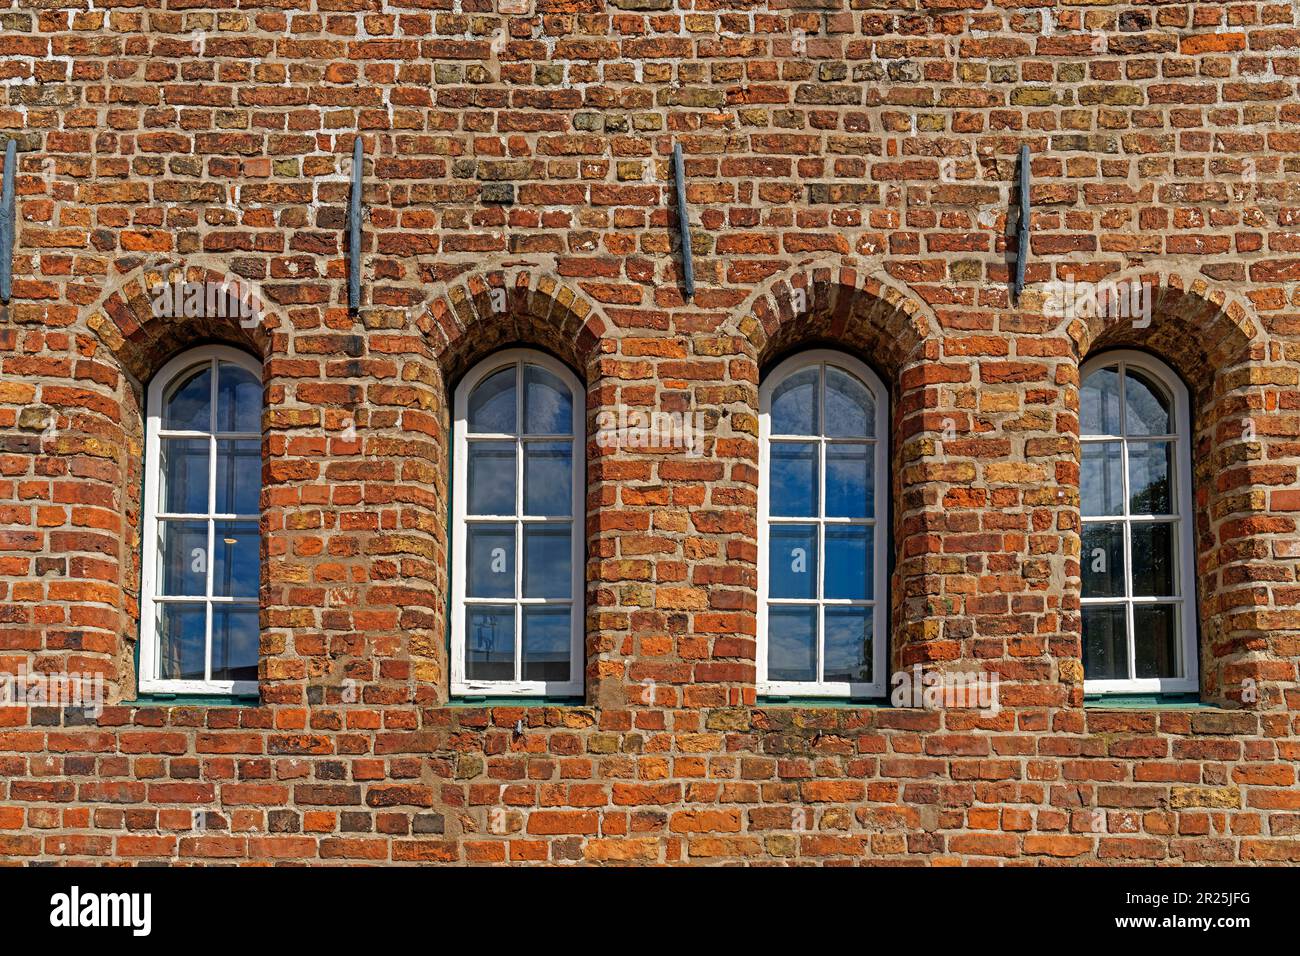 Salzspeichergruppe, Lagerhäuser, Backstein, Fenster Foto Stock